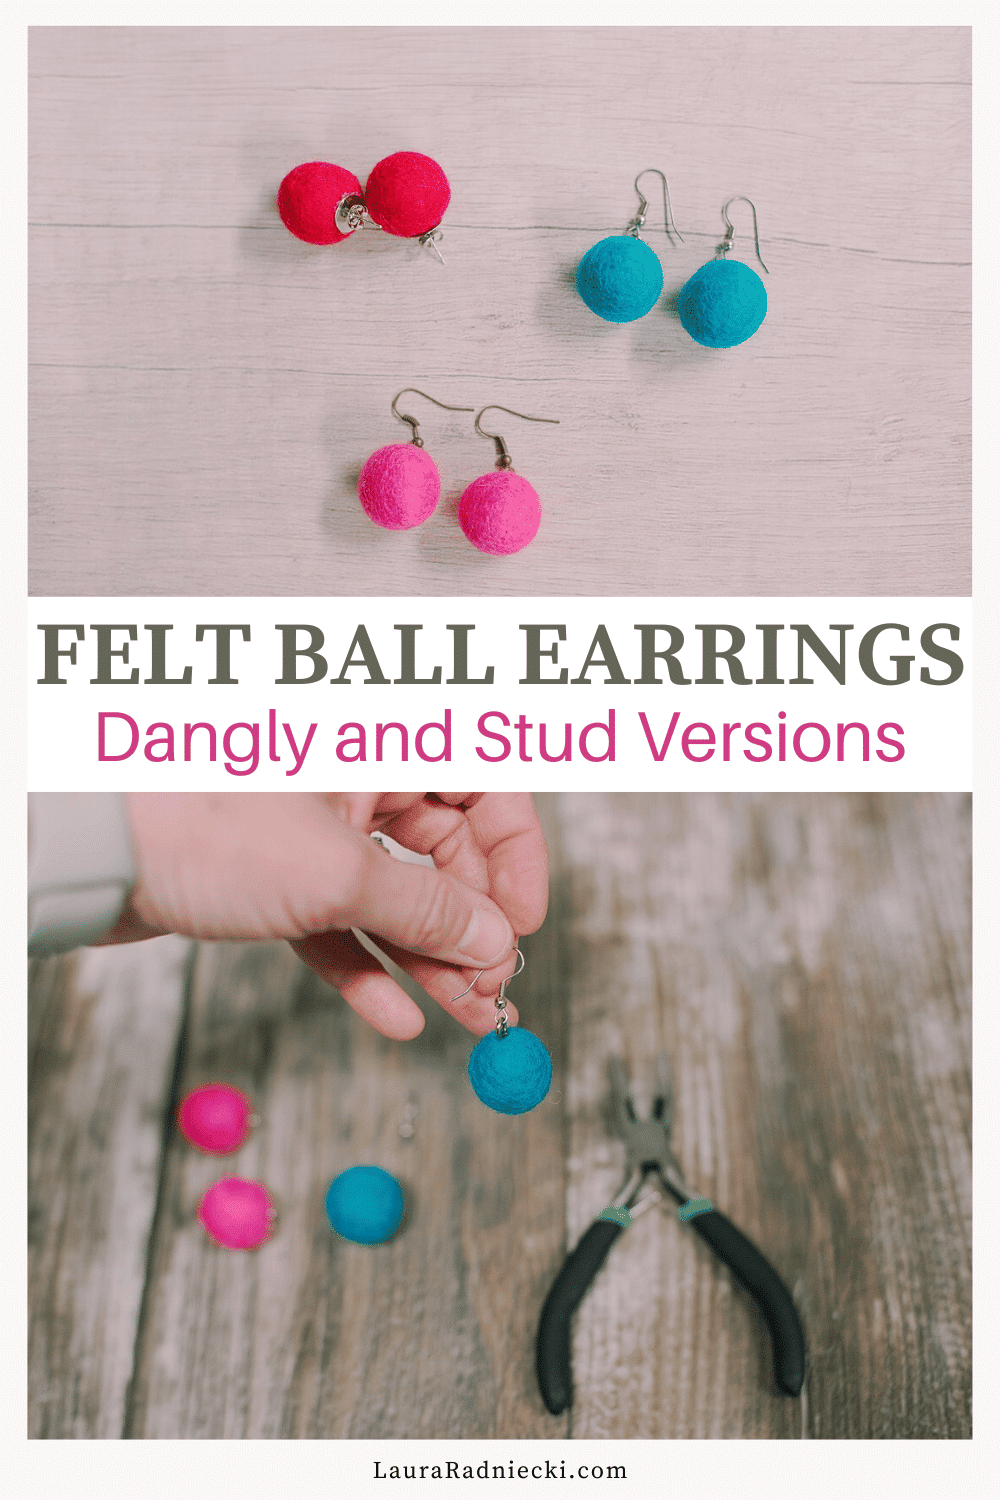 How to Make Felt Ball Earrings